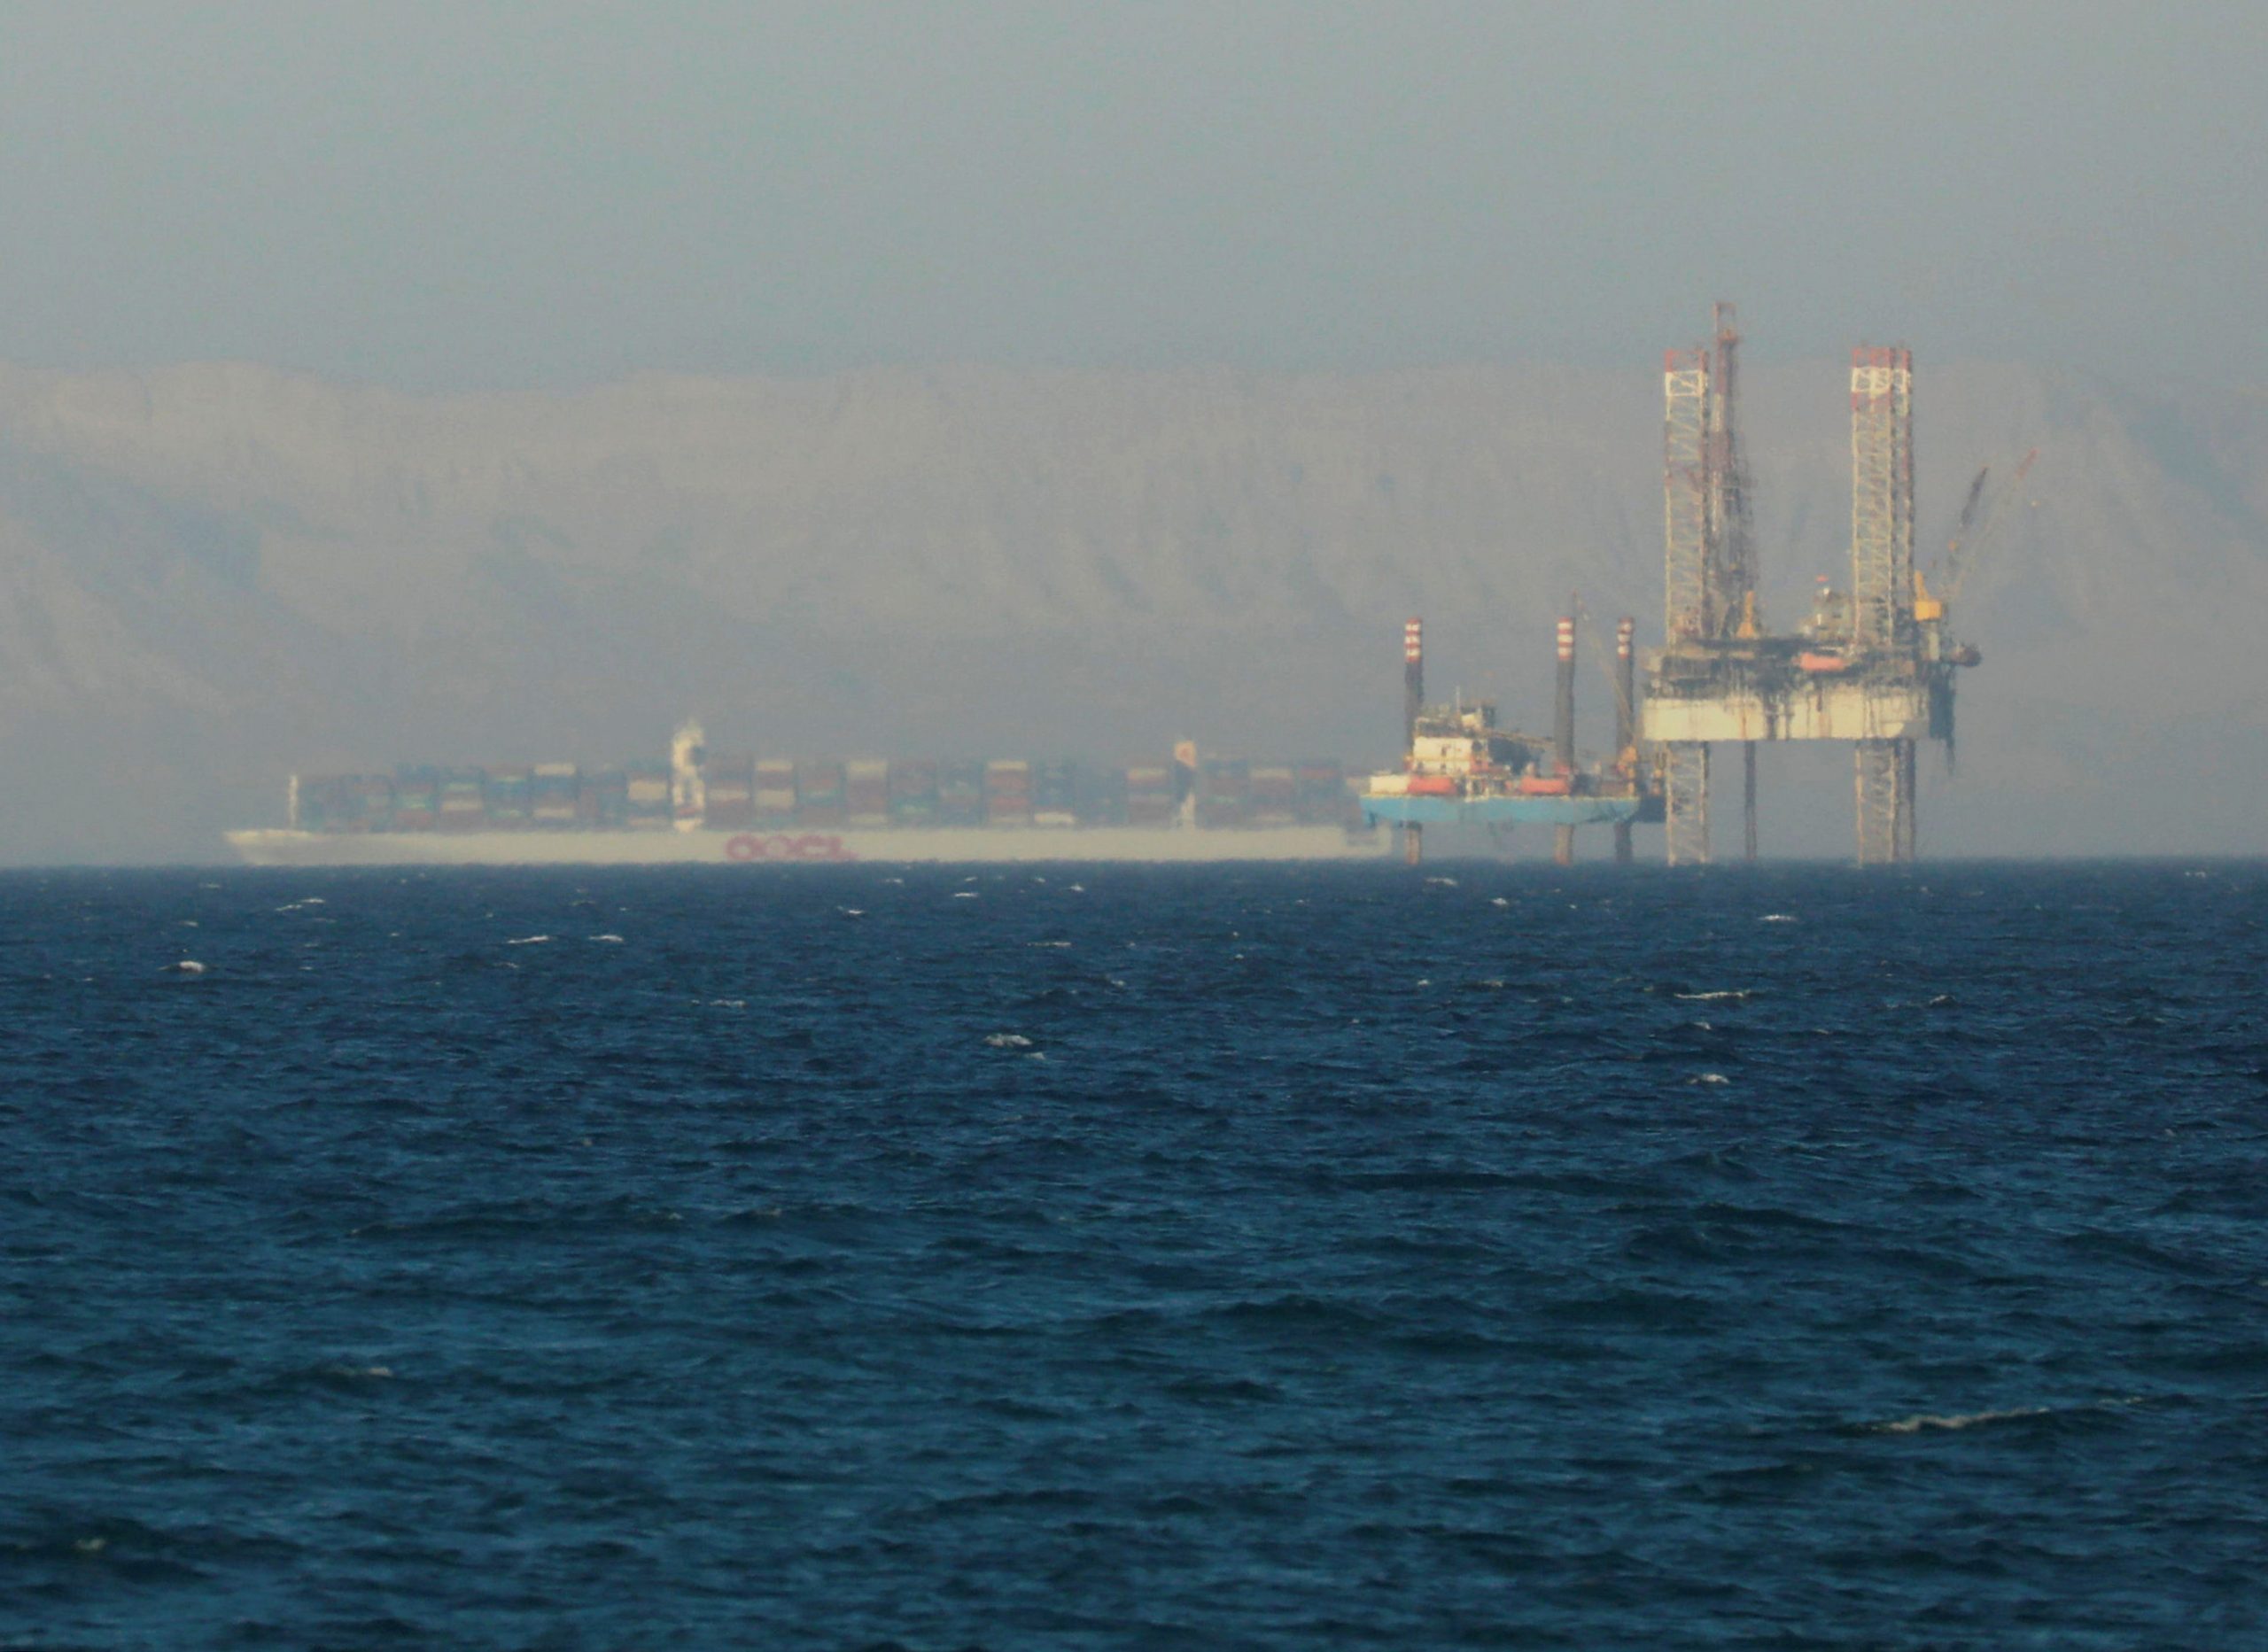 سفينة تعبر بالقرب من منصة نفطية في خليج السويس